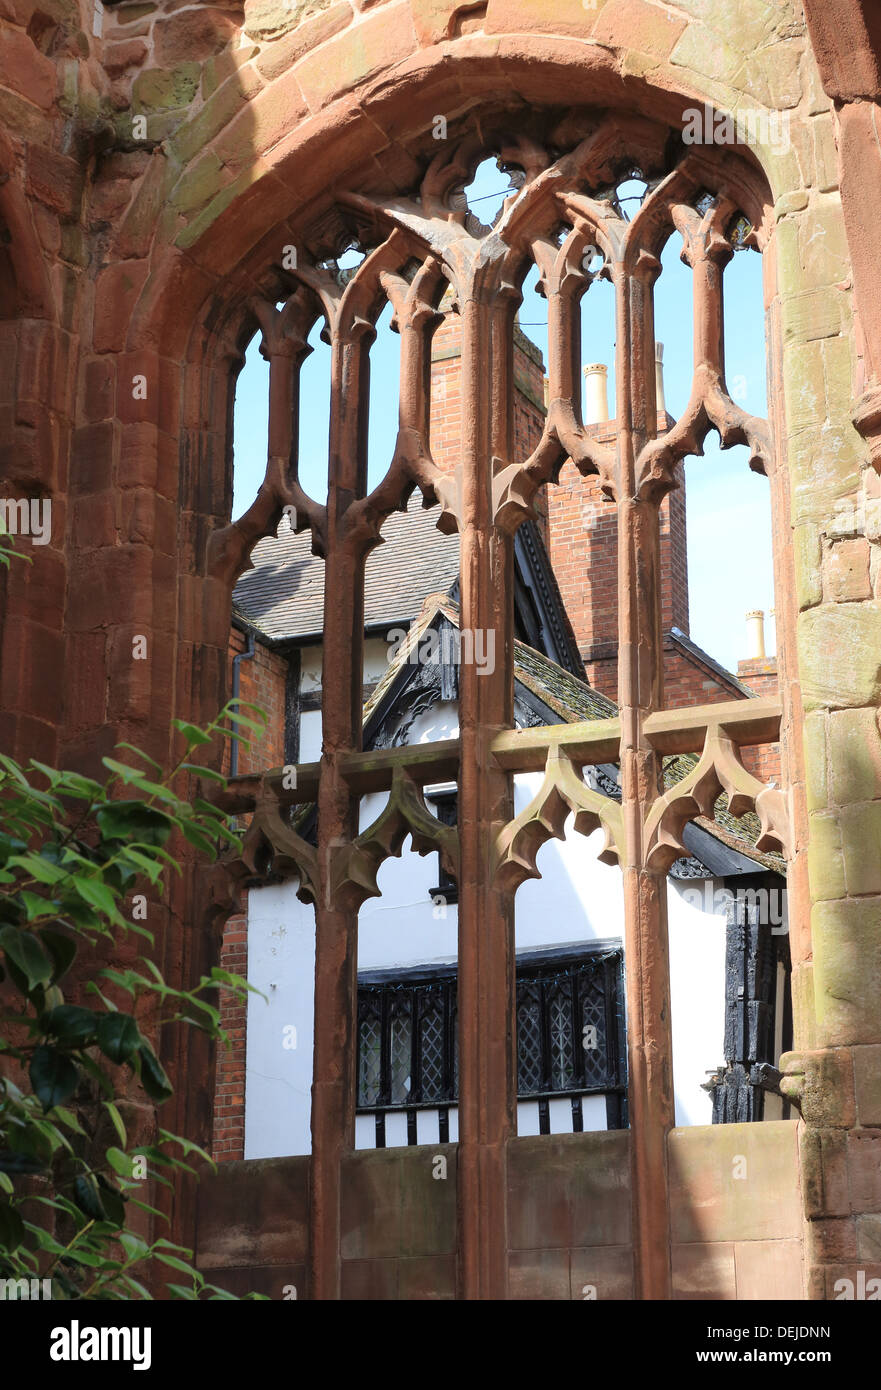 22 & 23 Bayley Lane in Coventry, gerahmt mittelalterlichen Holz Häuser, Blick durch ein Fenster der alten Kathedrale Ruinen Stockfoto